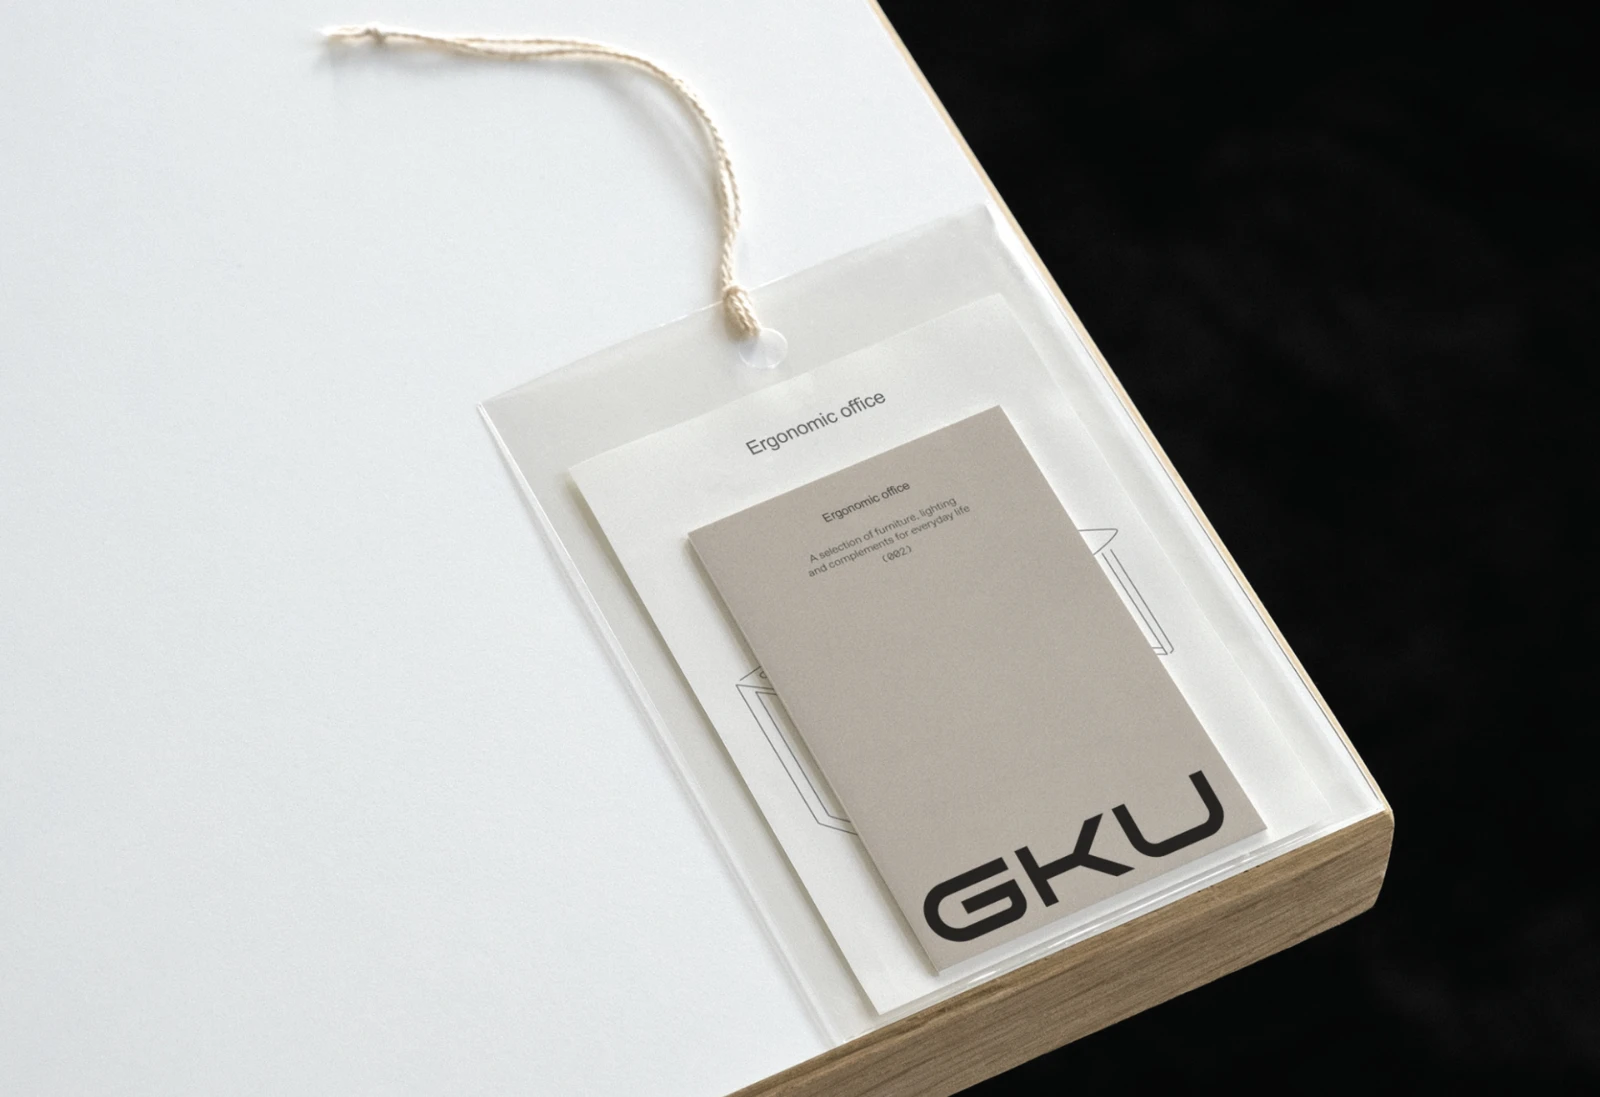 GKU branding by Skyfield Co